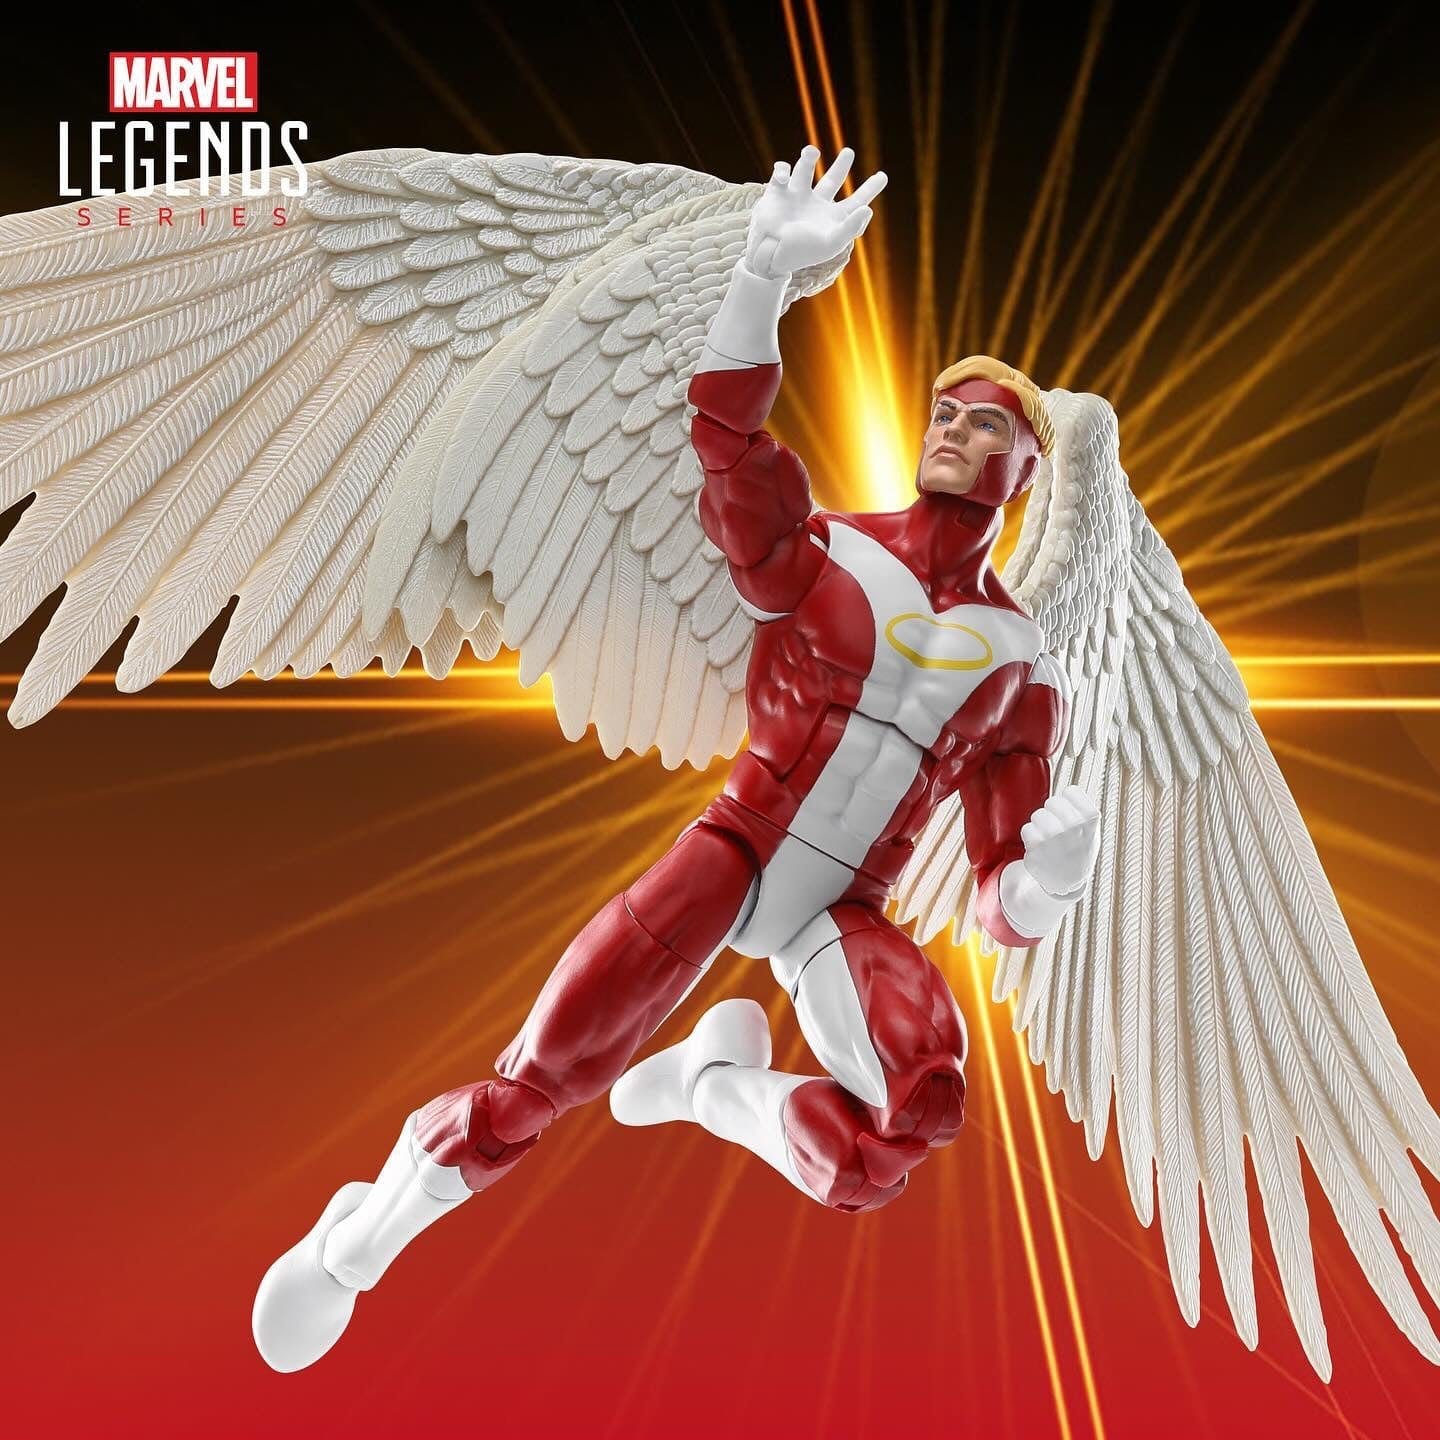 Marvel Legends Series X-Men Deluxe Angel Action Figure